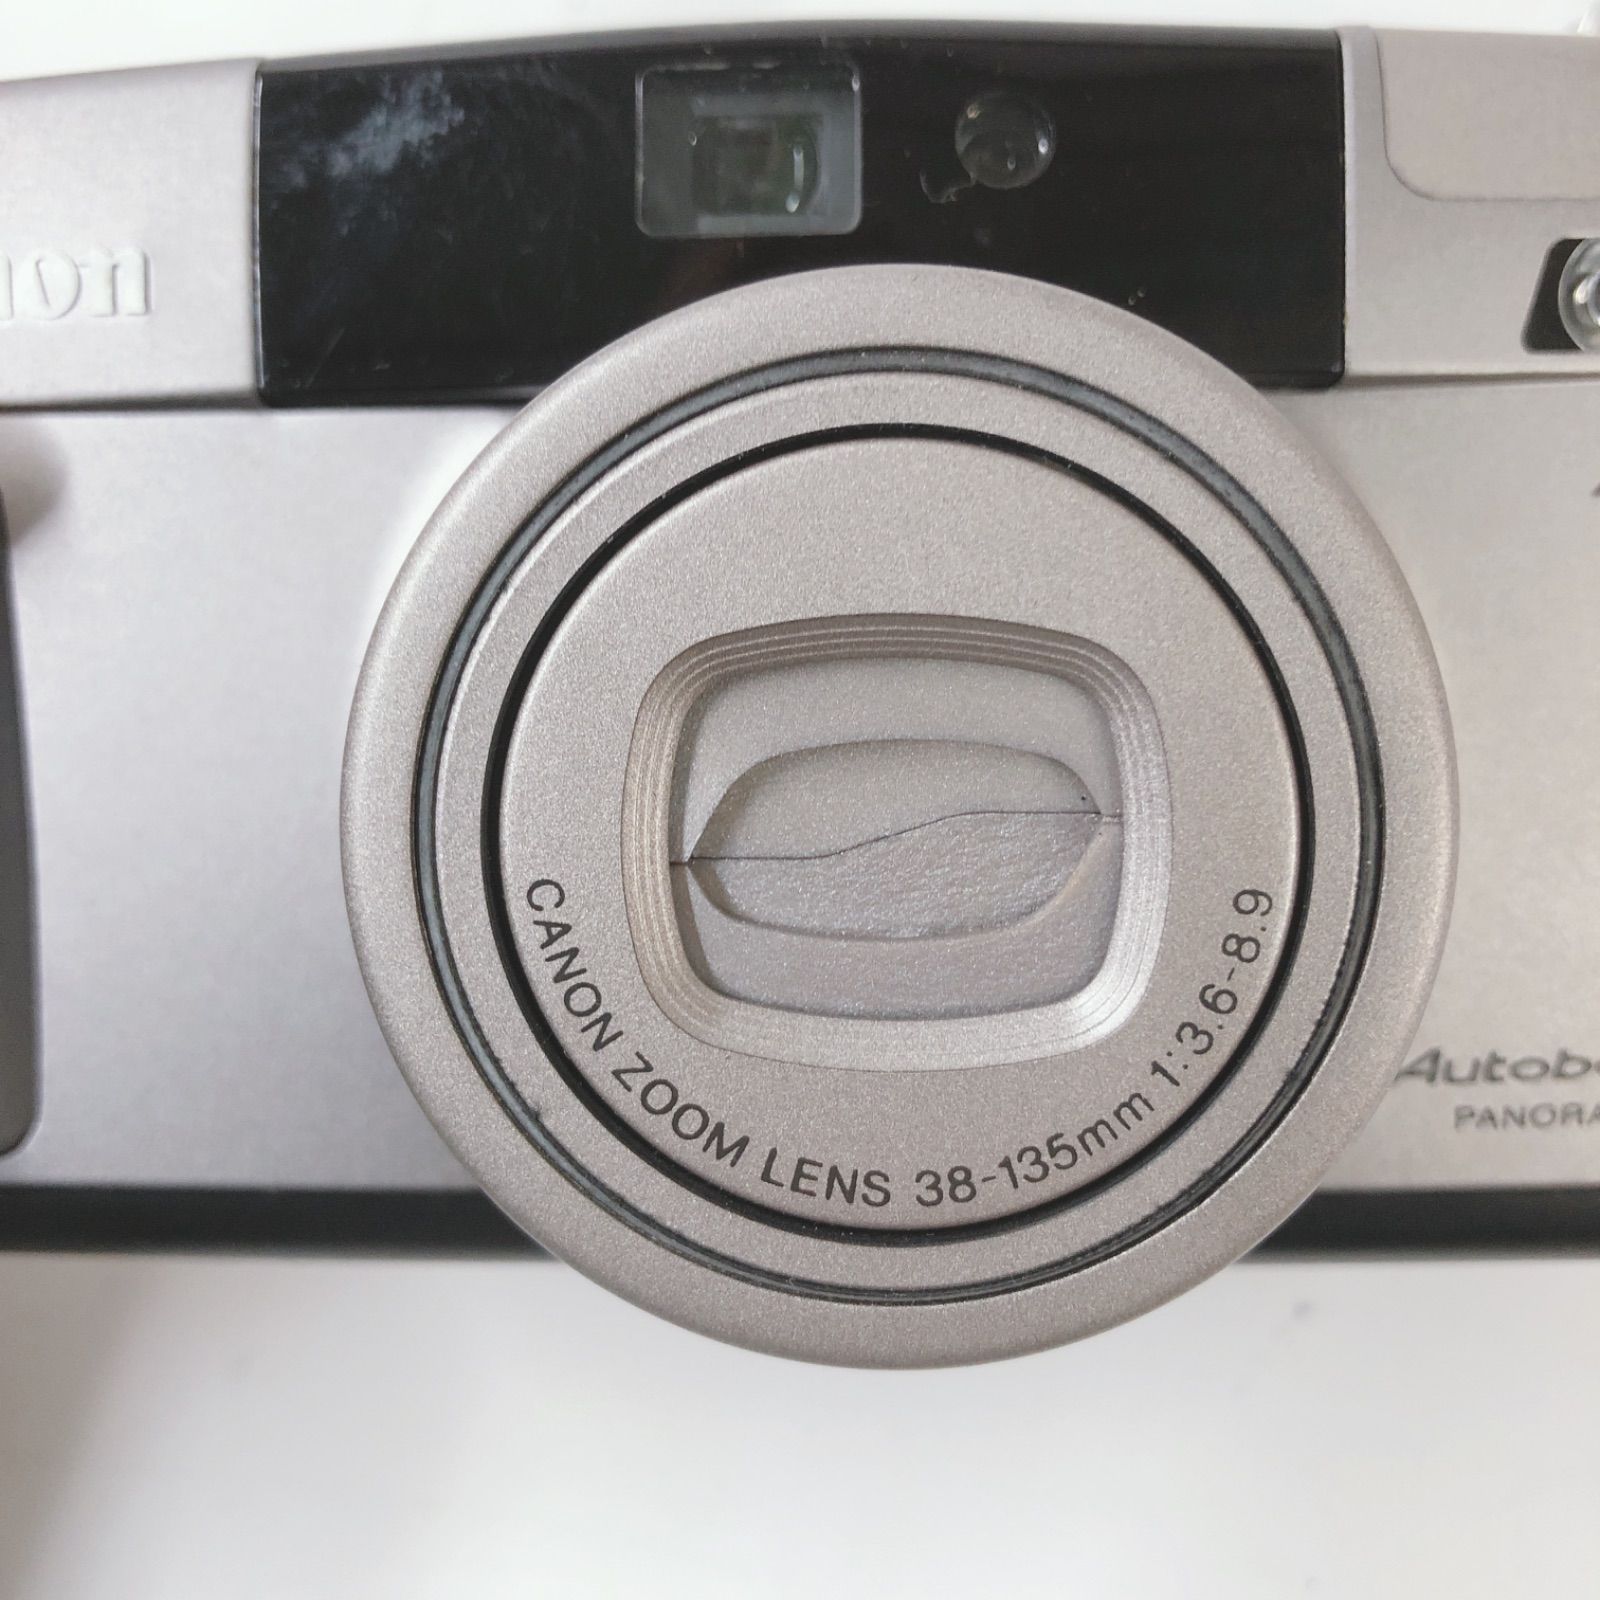 Canon キャノン オートボーイ Autoboy SⅡ フィルムカメラ - メルカリ